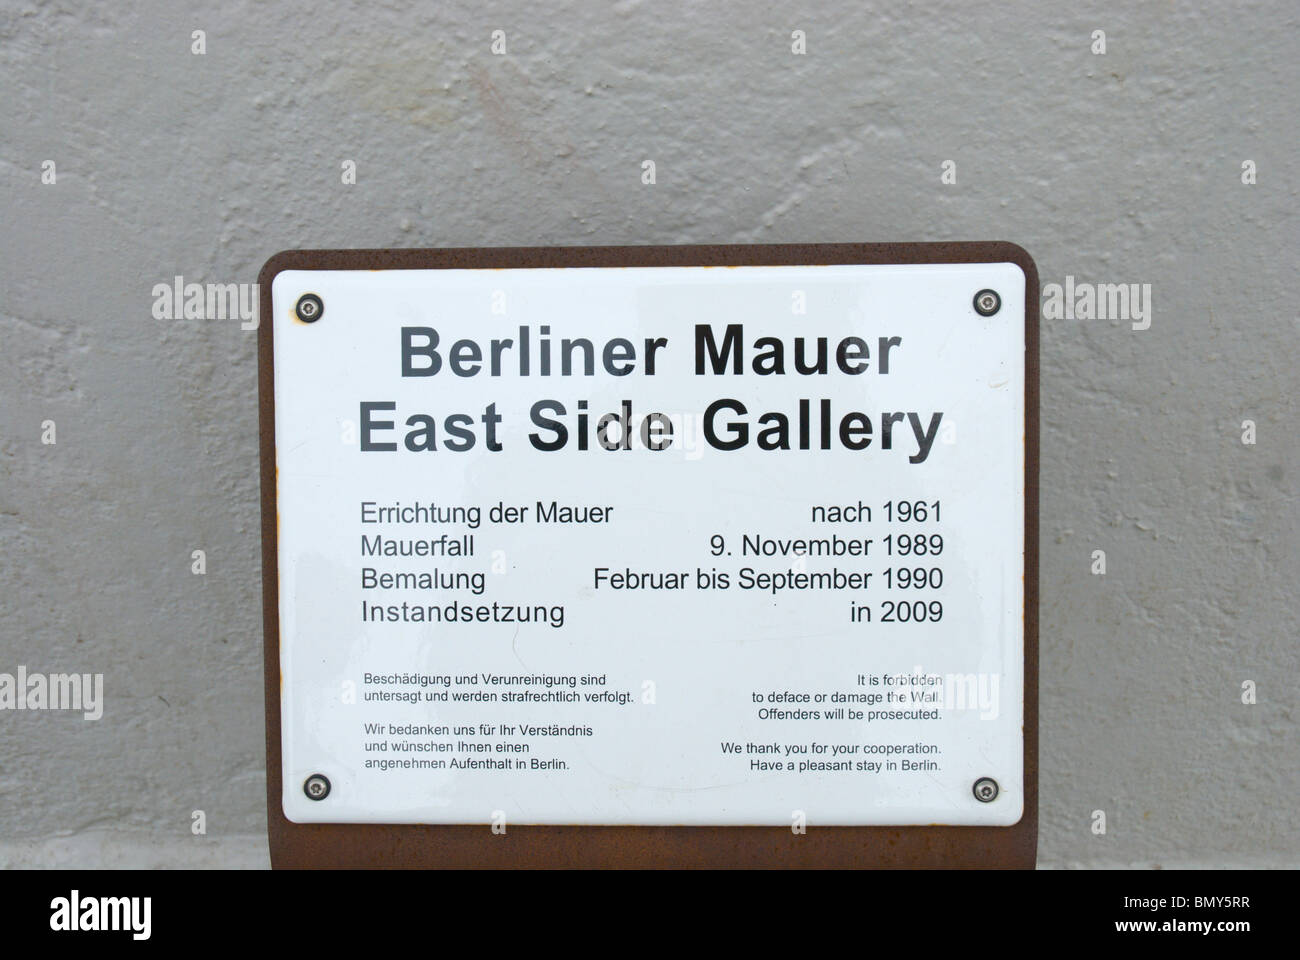 Berliner Mauer Berlin Wall East Side Gallery Friedrichshain di Berlino est Europa Germania Foto Stock